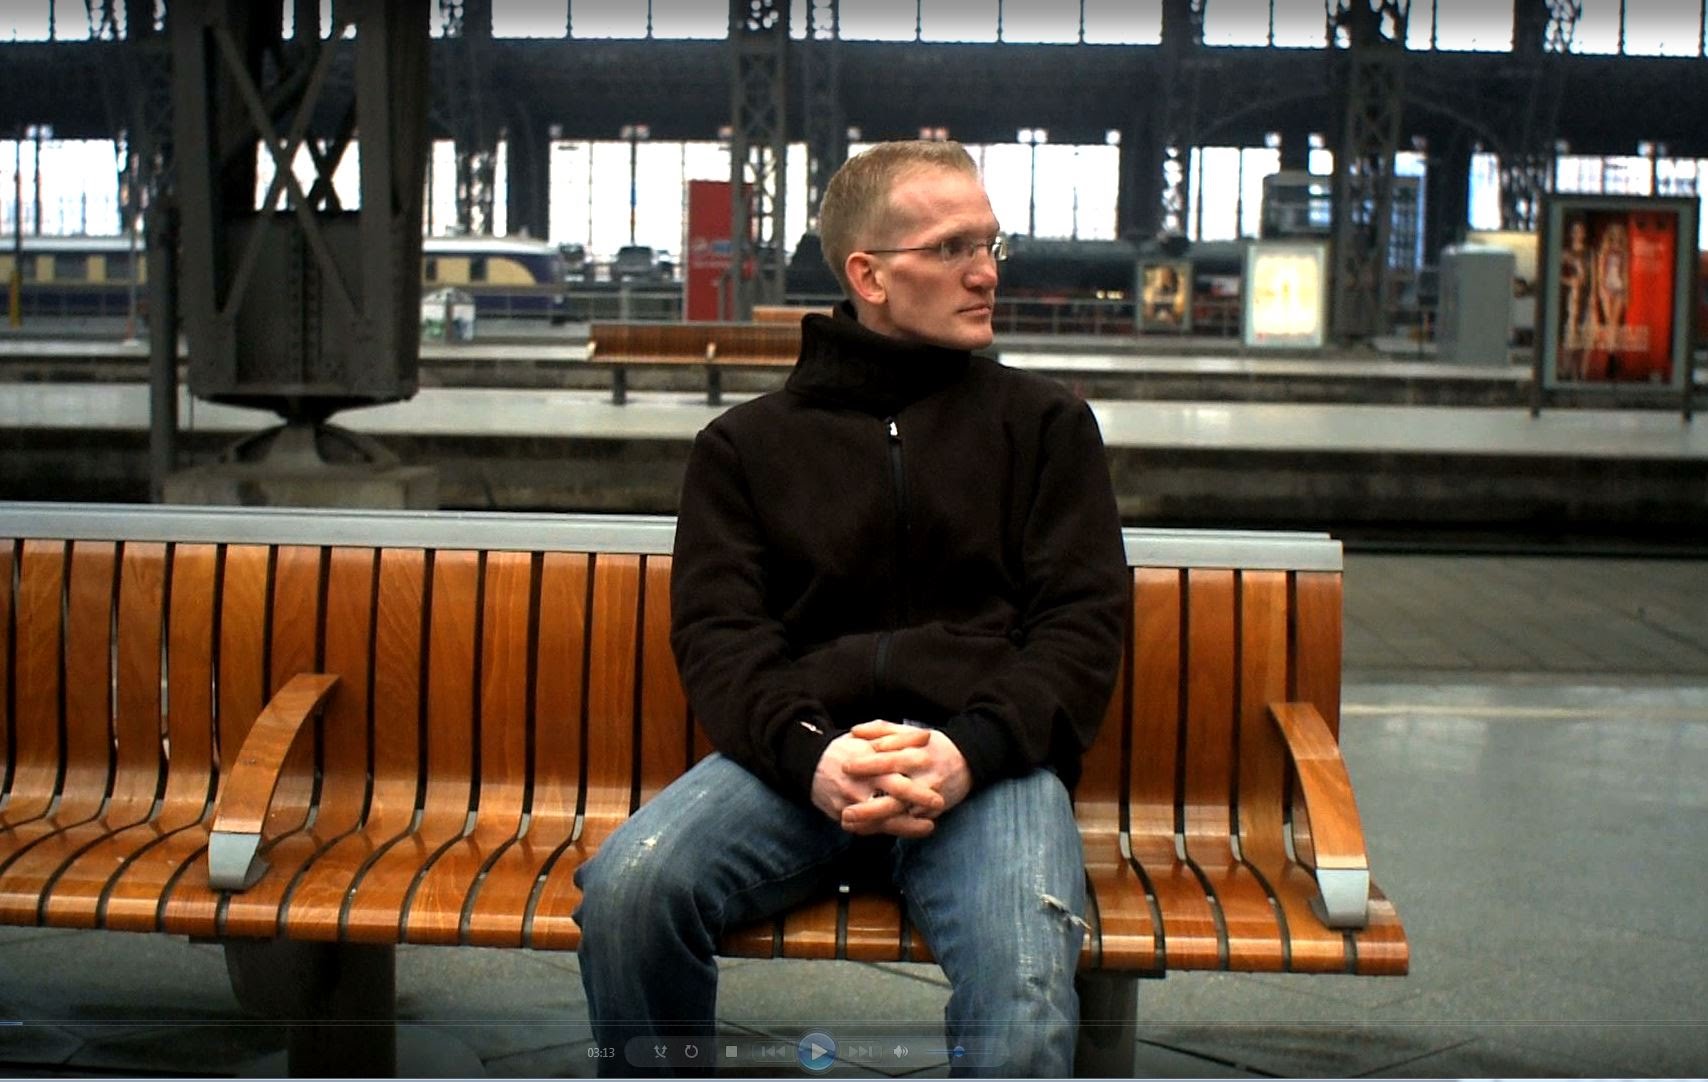 Mann sitzt auf Bank im Bahnhof.